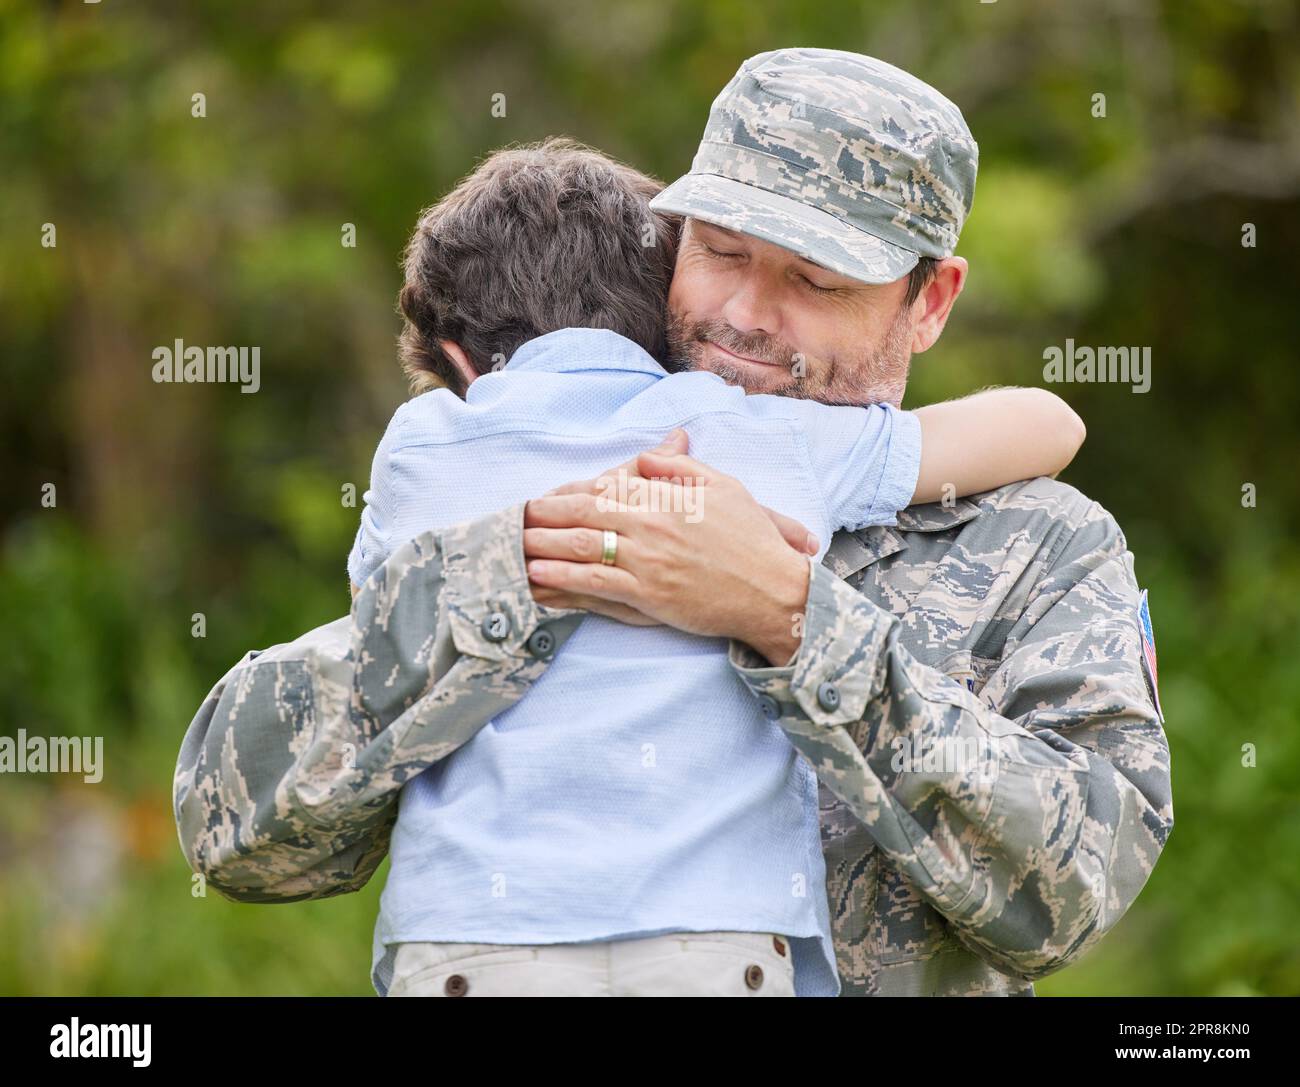 Le lien entre un parent et un enfant est incassable, un père revenant de l'armée embrassant son fils à l'extérieur. Banque D'Images